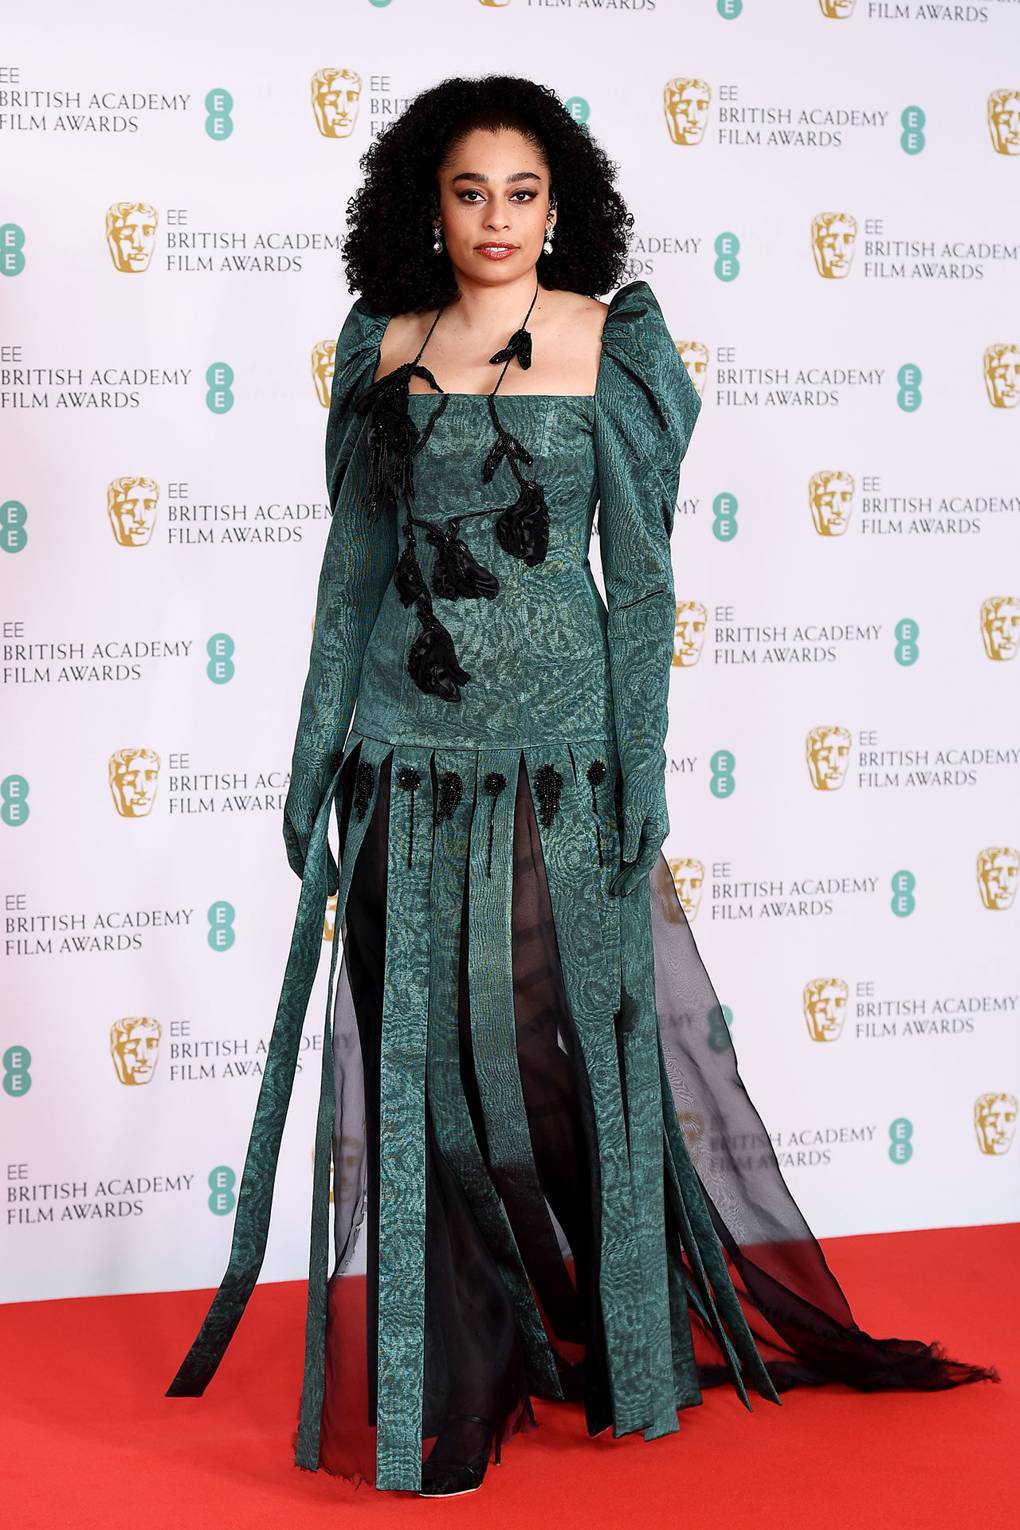 BAFTA Awards 2021 Best Looks From The Red Carpet Glamour UK